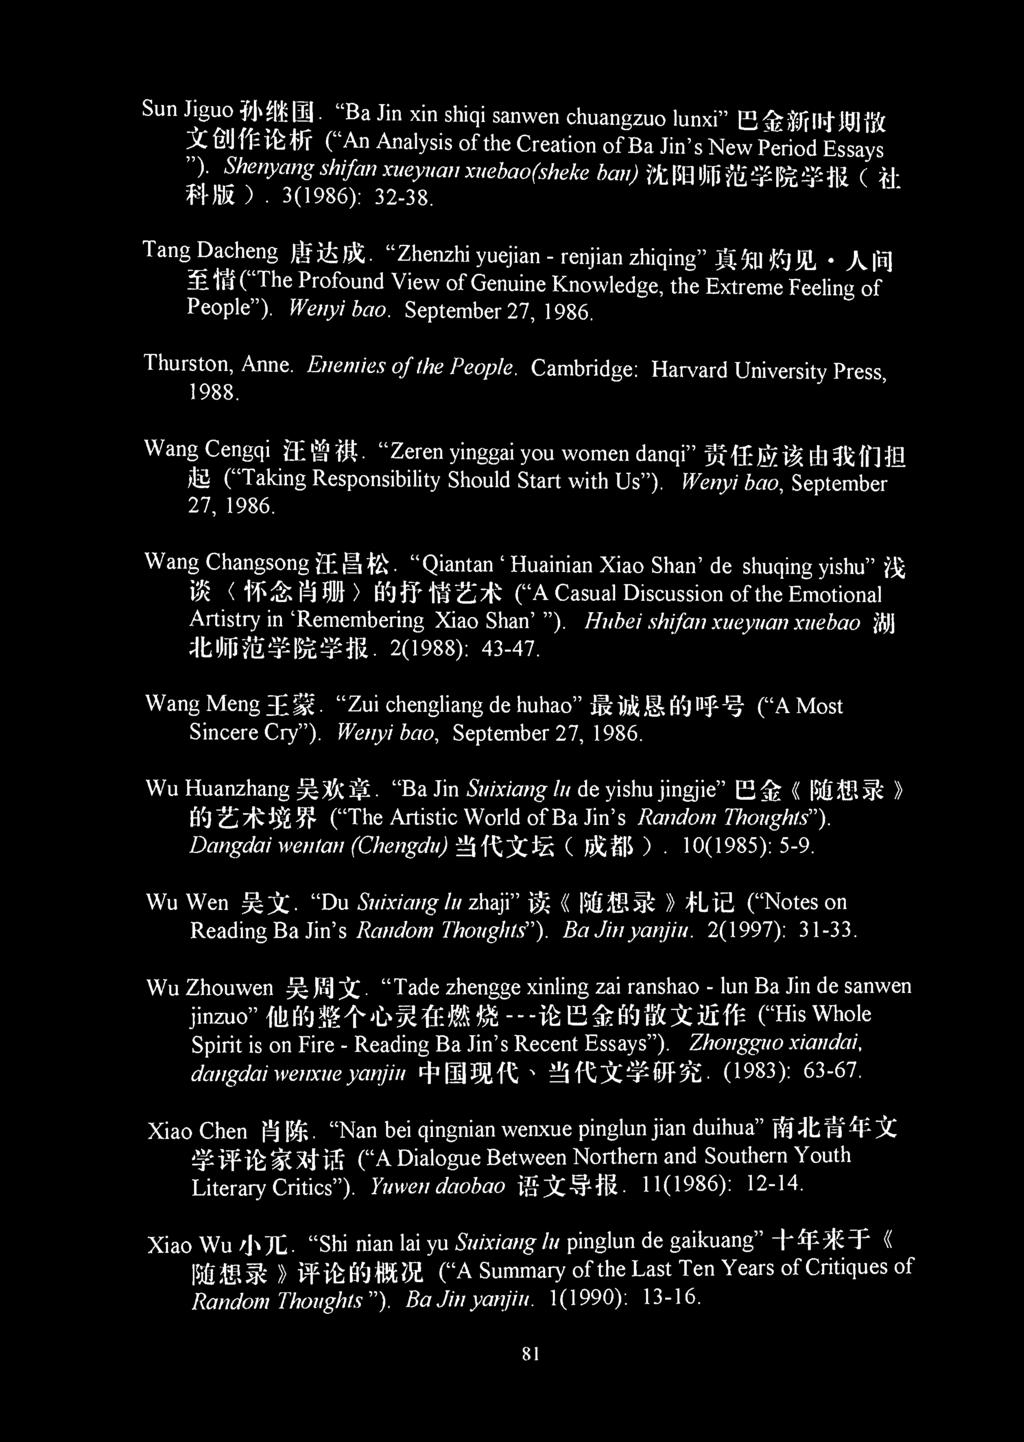 Sun Jiguo (1 "Ba Jin xin shiqi sanwen chuangzuo lunxi" E 3 $thj]8] ft 1C i f/r ("An Analysis of the Creation of Ba Jin's New Period Essays ").